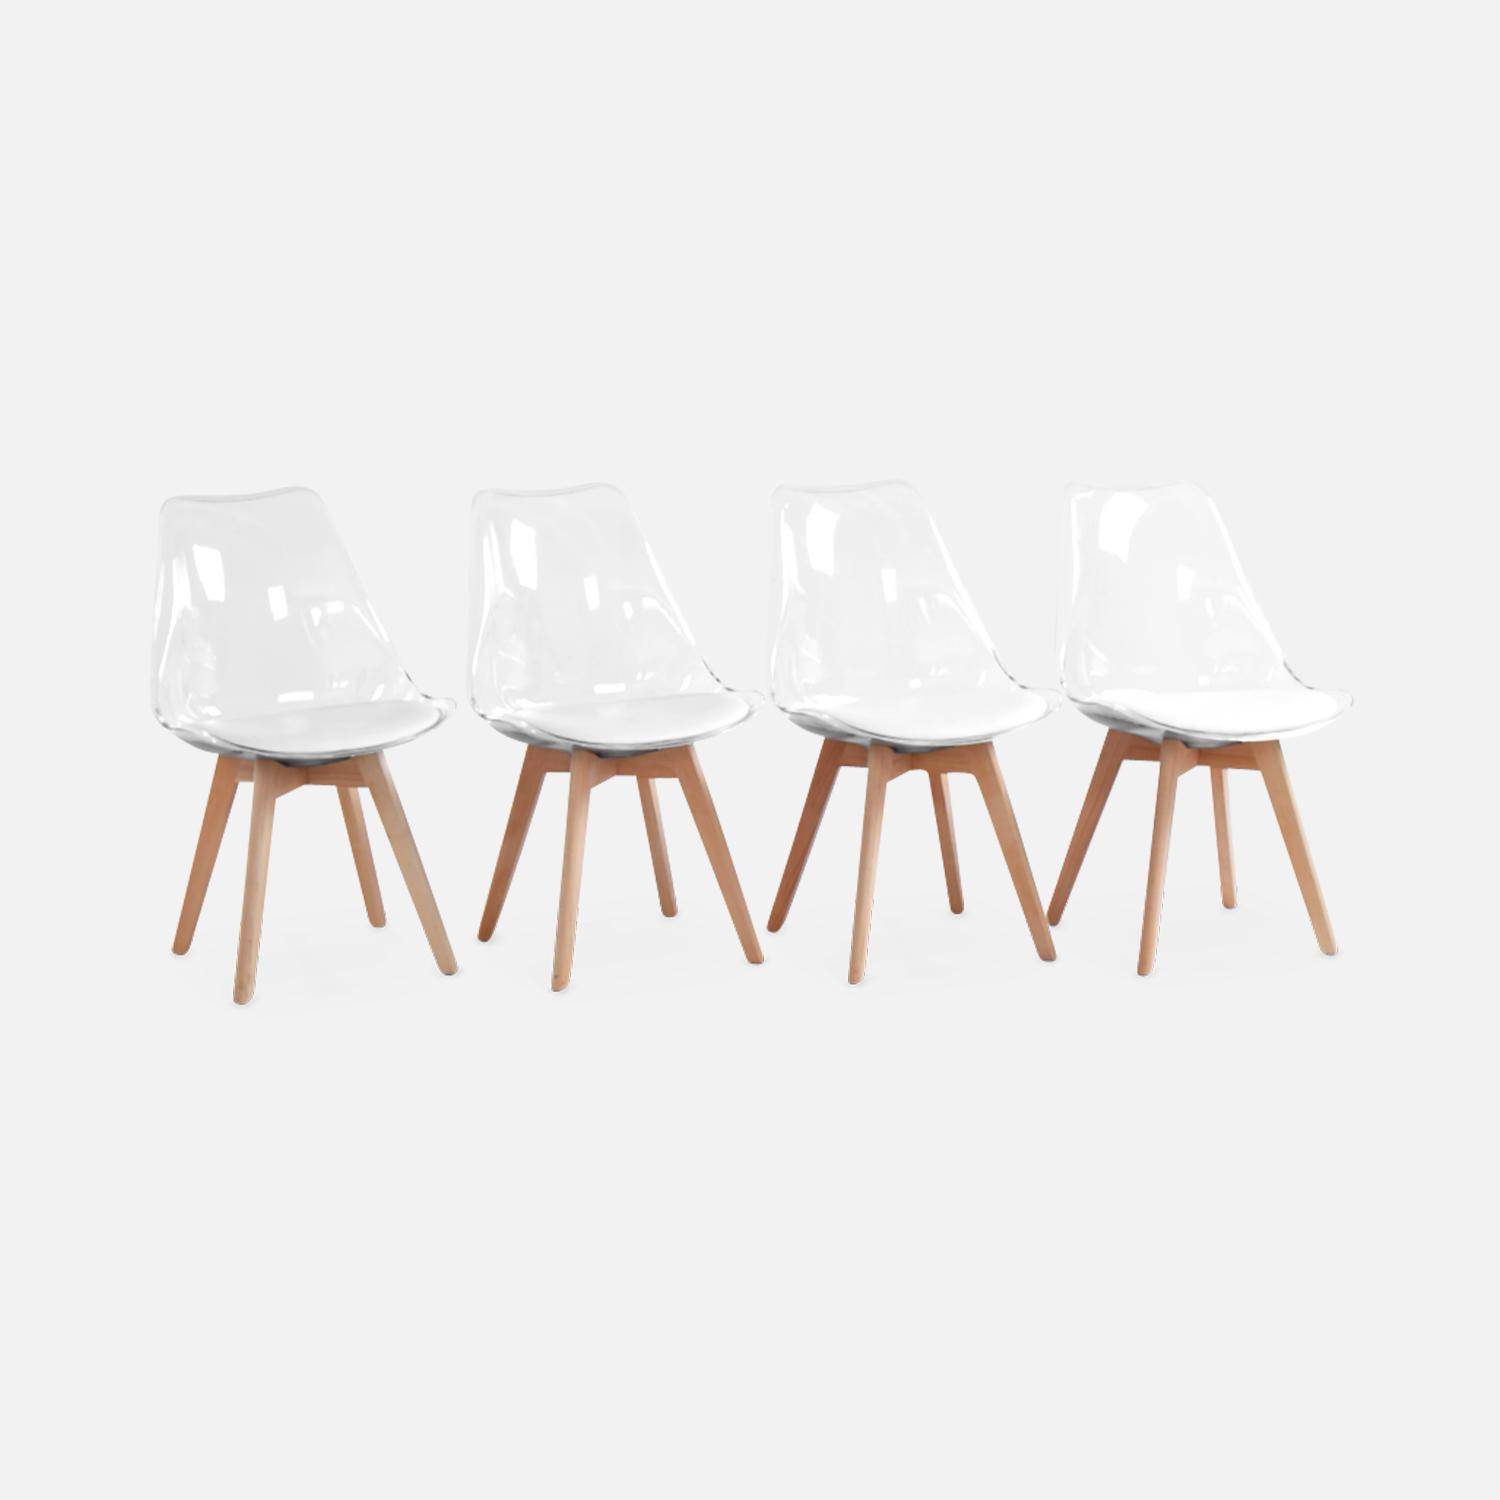 Juego de 4 sillas escandinavas - Lagertha - patas de madera, asientos individuales, cojín blanco, carcasa transparente ,sweeek,Photo3